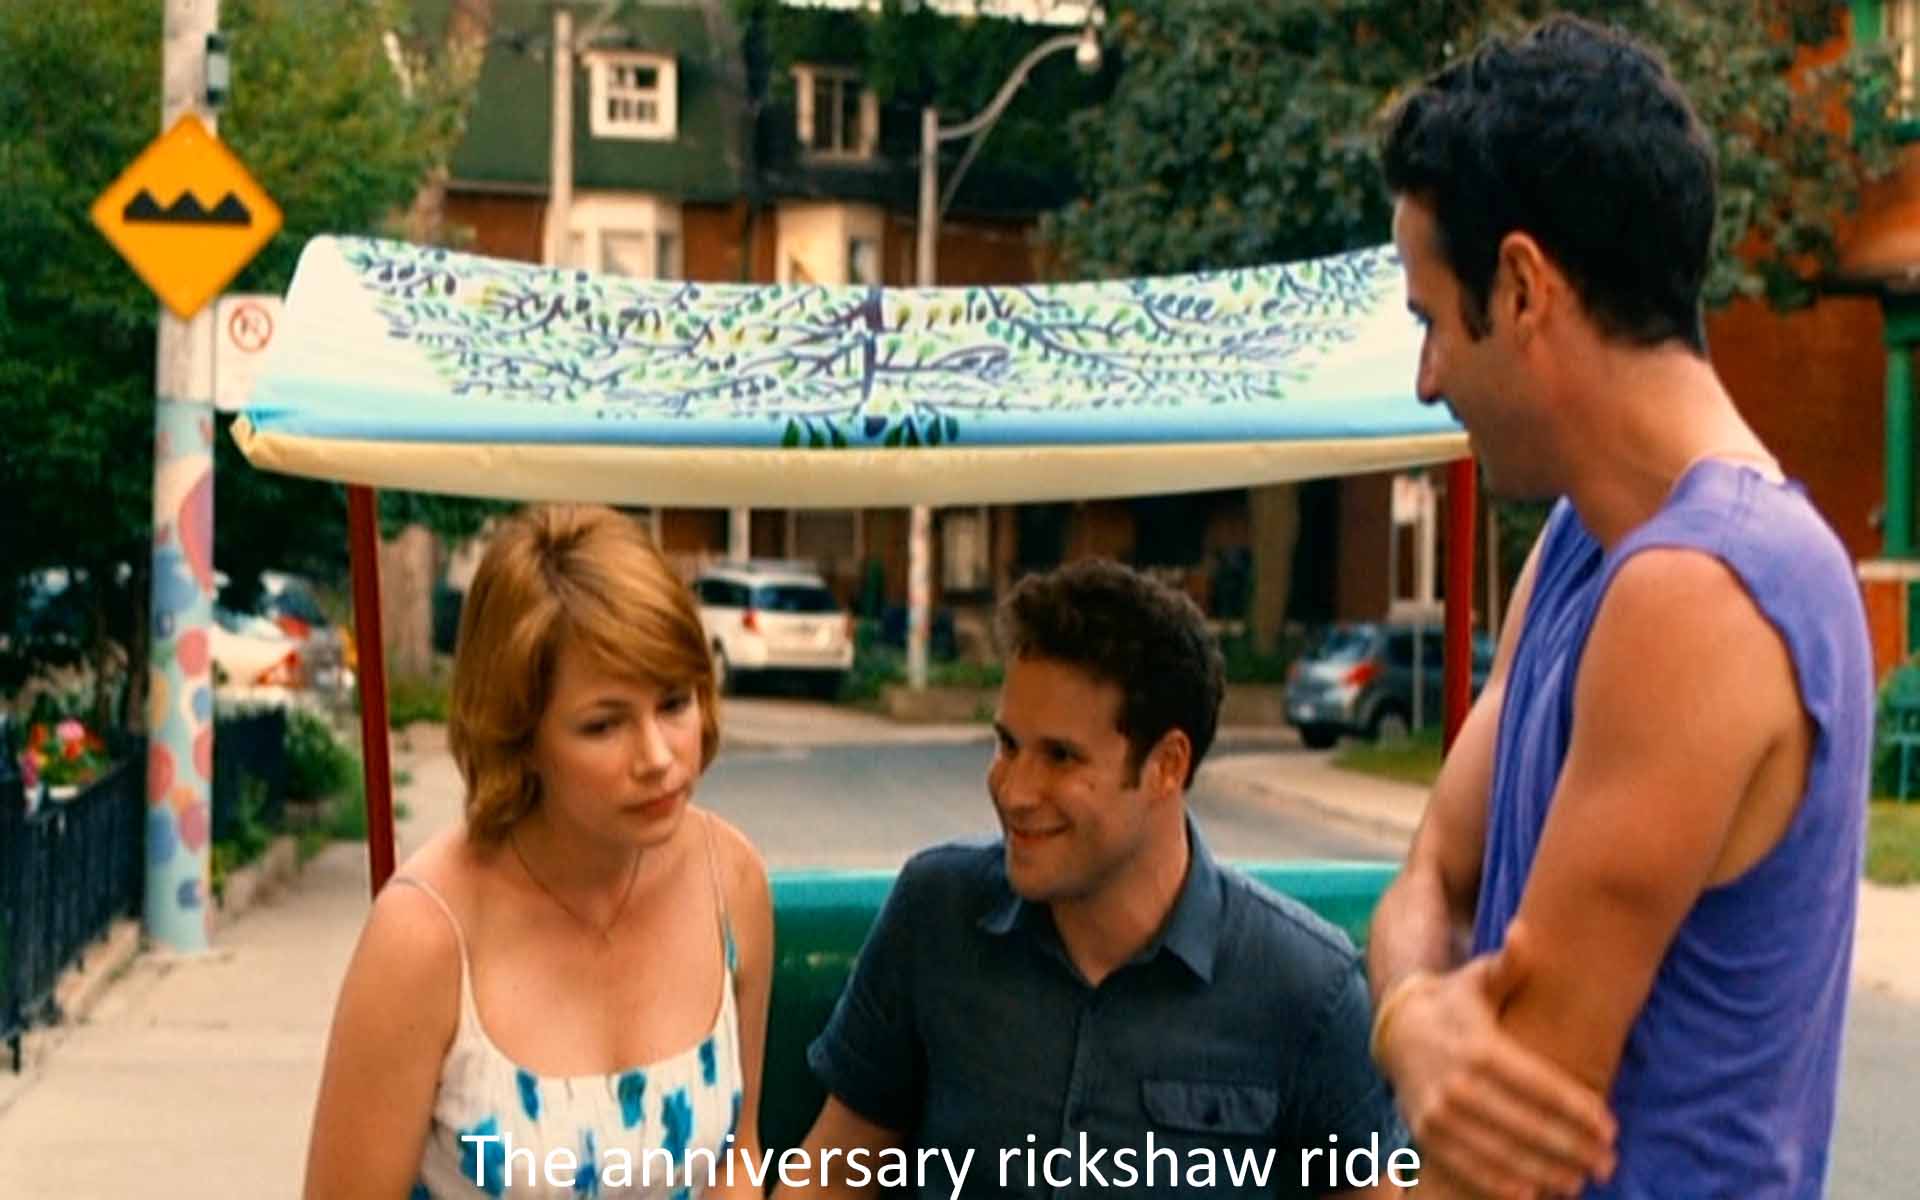 The anniversary rickshaw ride